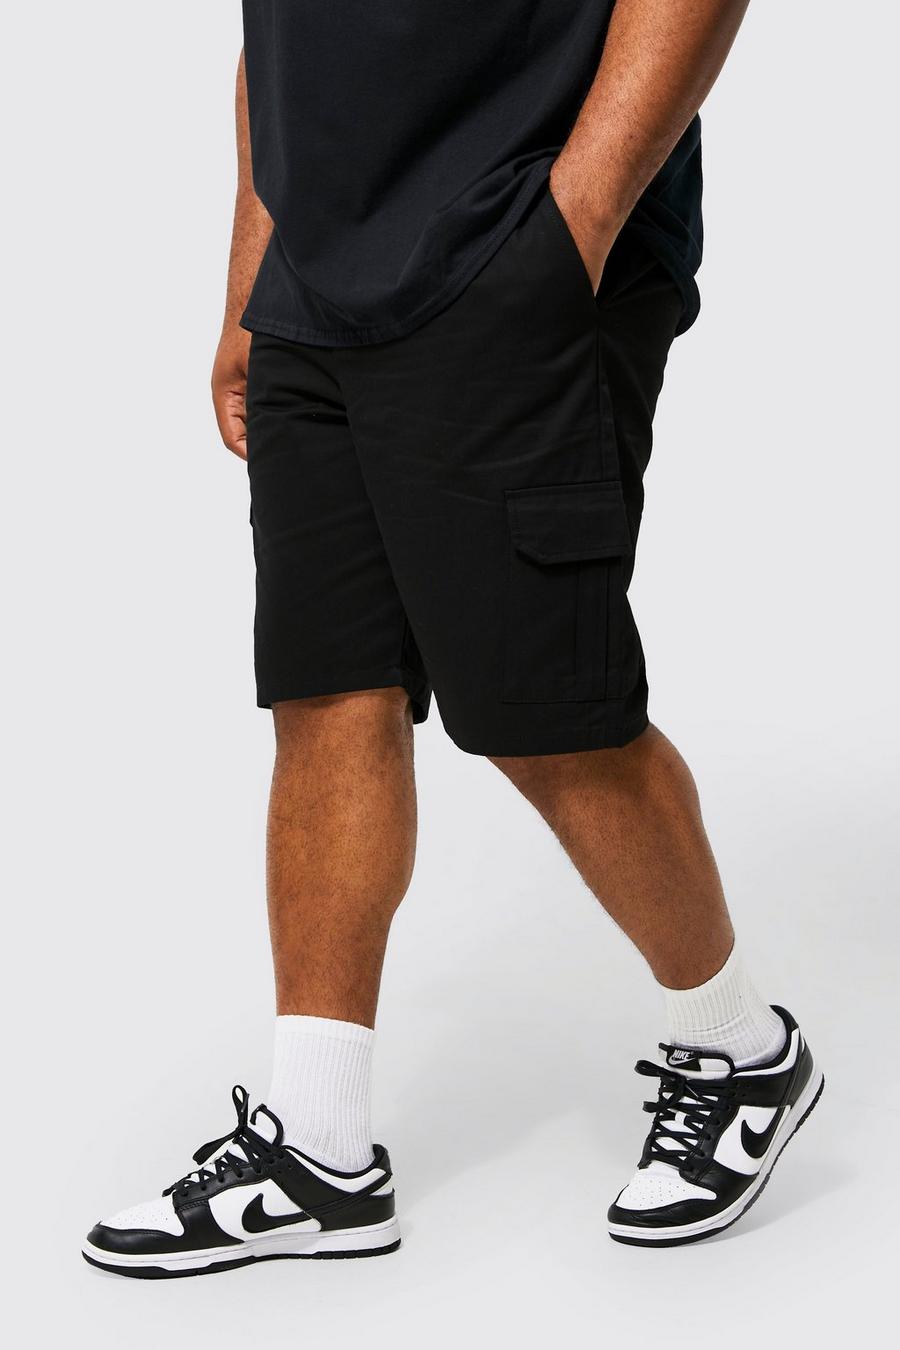 Pantalón corto Plus cargo con cintura elástica, Black nero